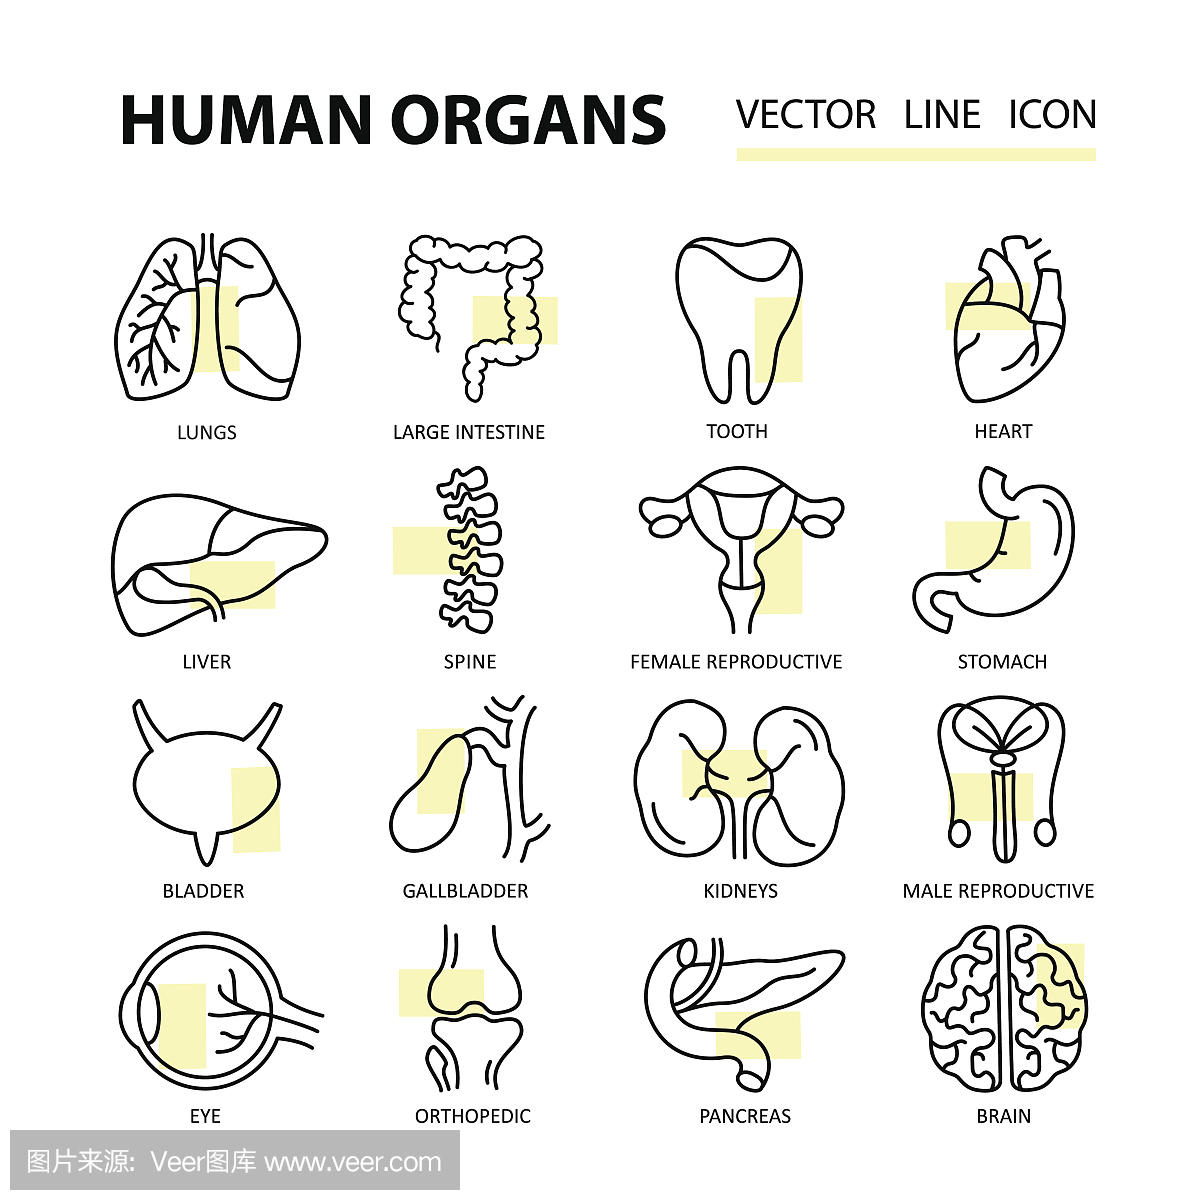 现代细线图标,主题为人体内部器官。